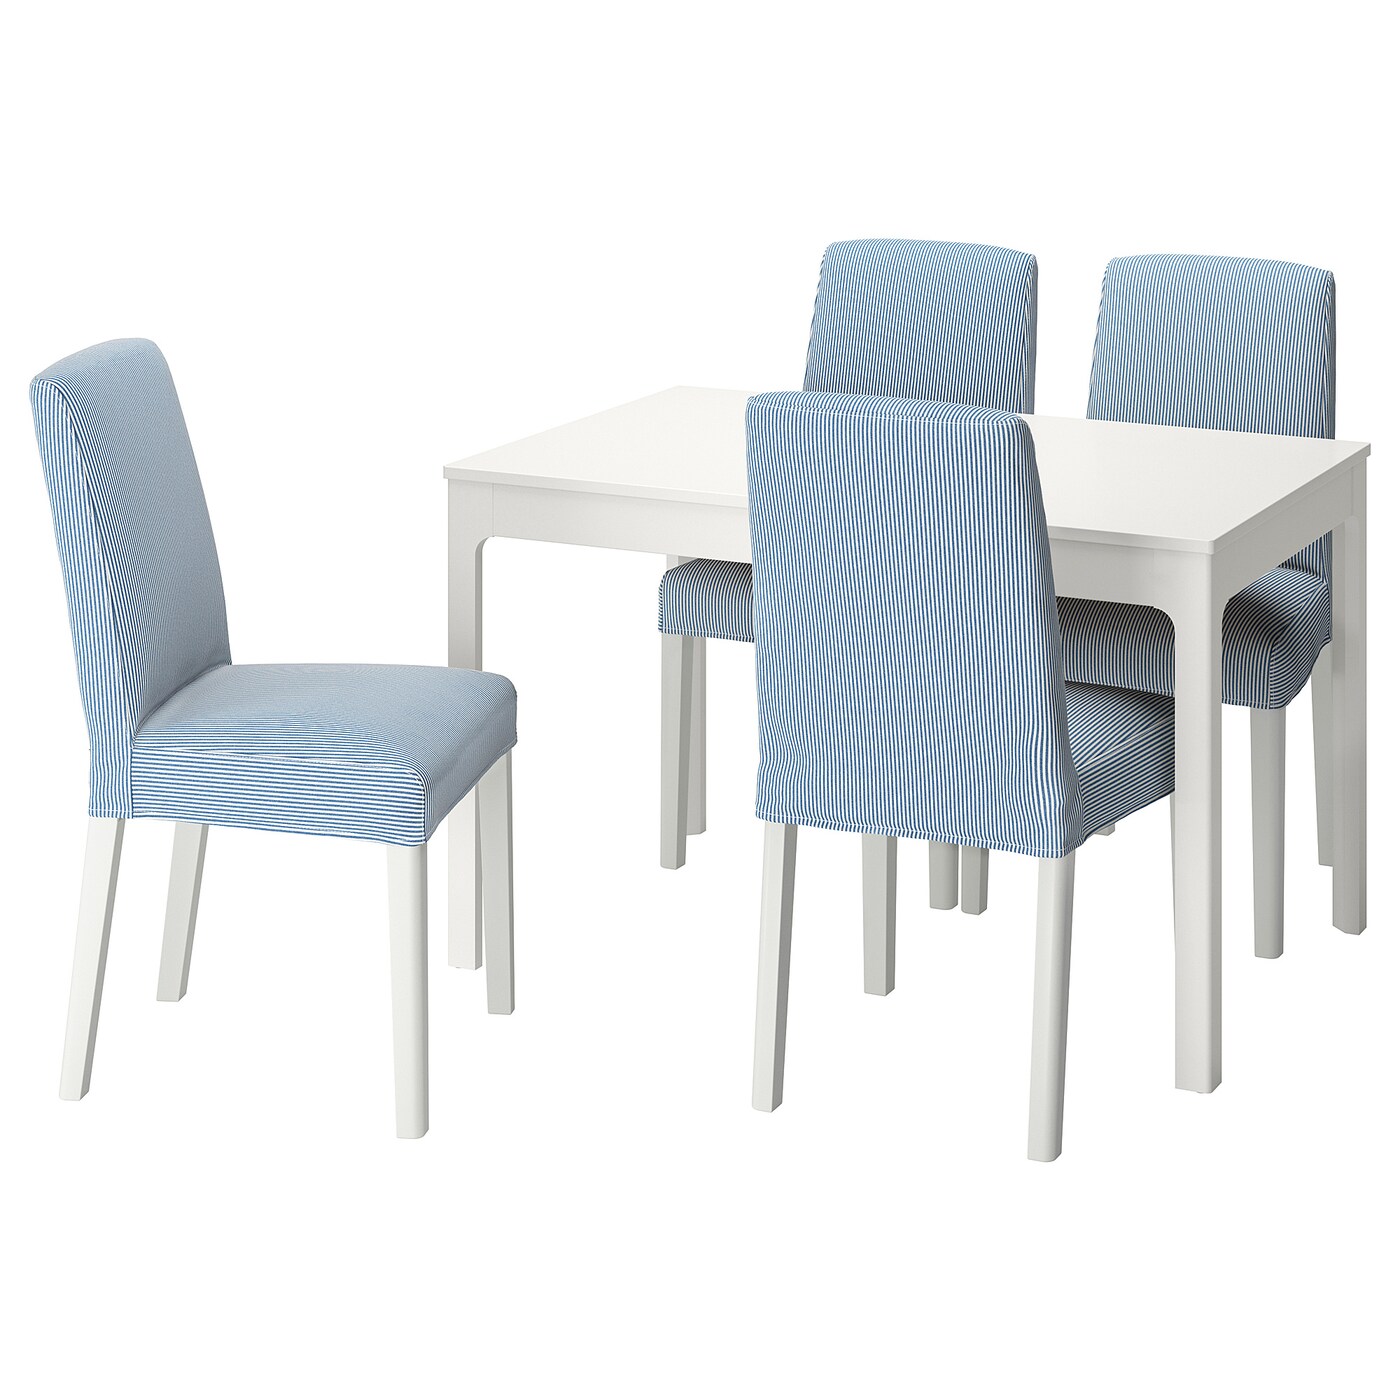 Стол и 4 стула - EKEDALEN / BERGMUND IKEA/ ЭКАДАЛЕН /БЕРГМУНД ИКЕА, 120/180 см, белый/голубой